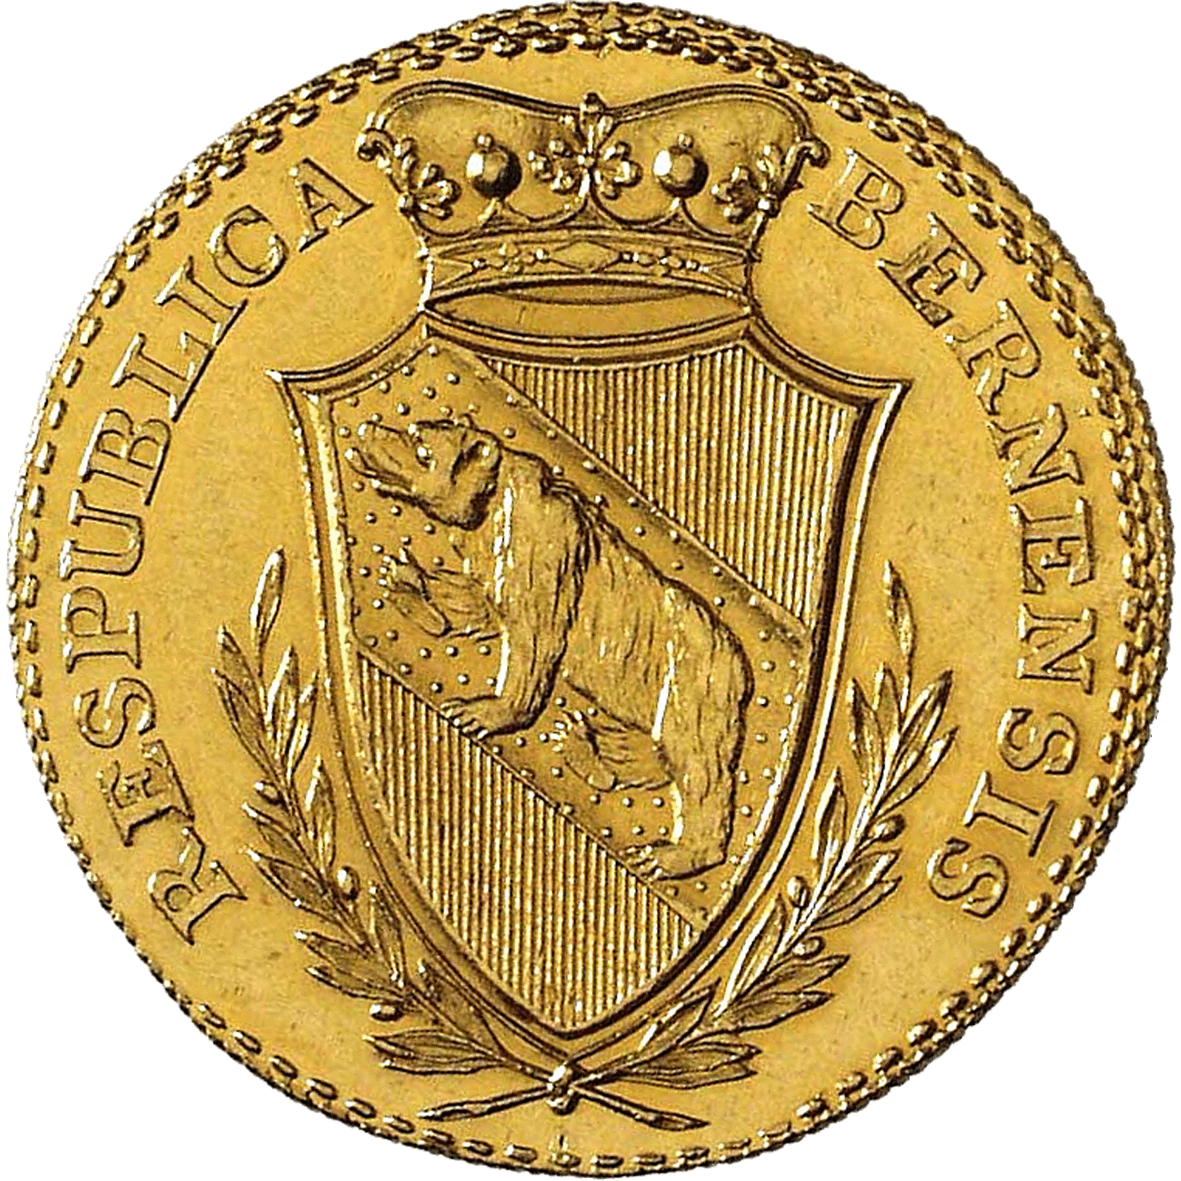 Republik Bern, 4 Dukaten 1796 (reverse)